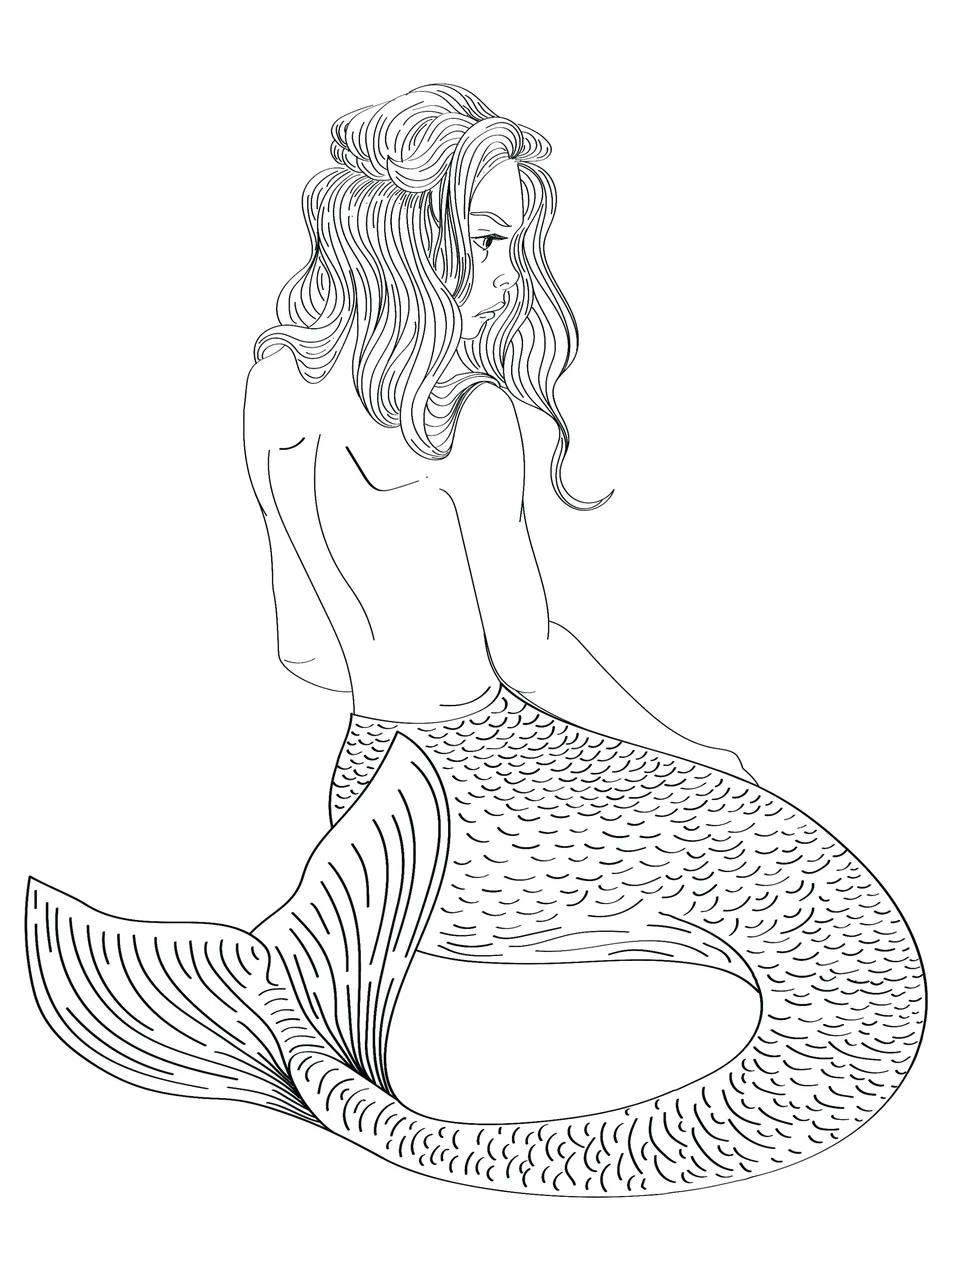 Mermaid.jpg